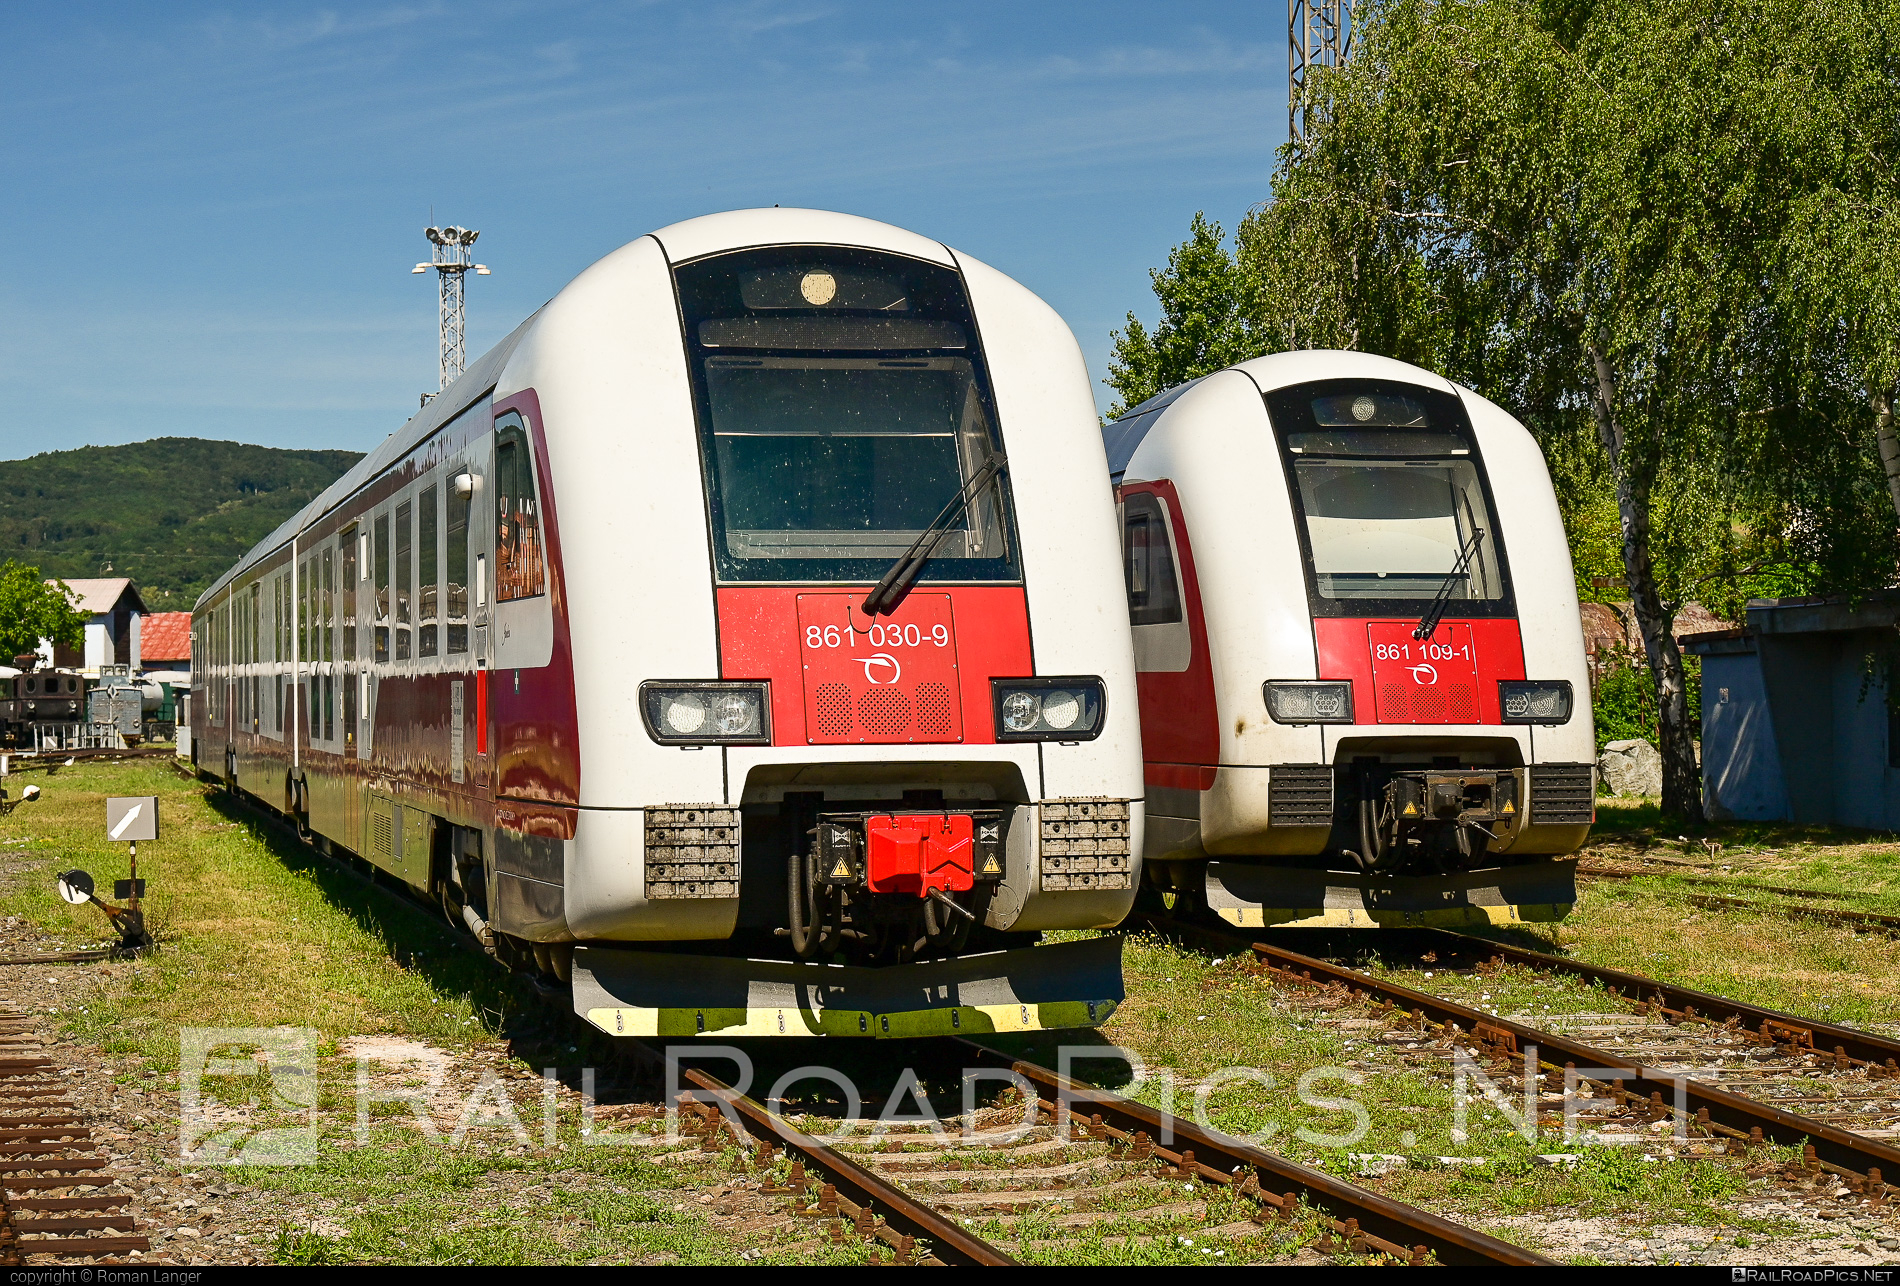 ŽOS Vrútky Class 861.0 - 861 030-9 operated by Železničná Spoločnost' Slovensko, a.s. #ZeleznicnaSpolocnostSlovensko #dunihlav #husenica #zosvrutky #zosvrutky861 #zosvrutky8610 #zssk #zssk861 #zssk8610